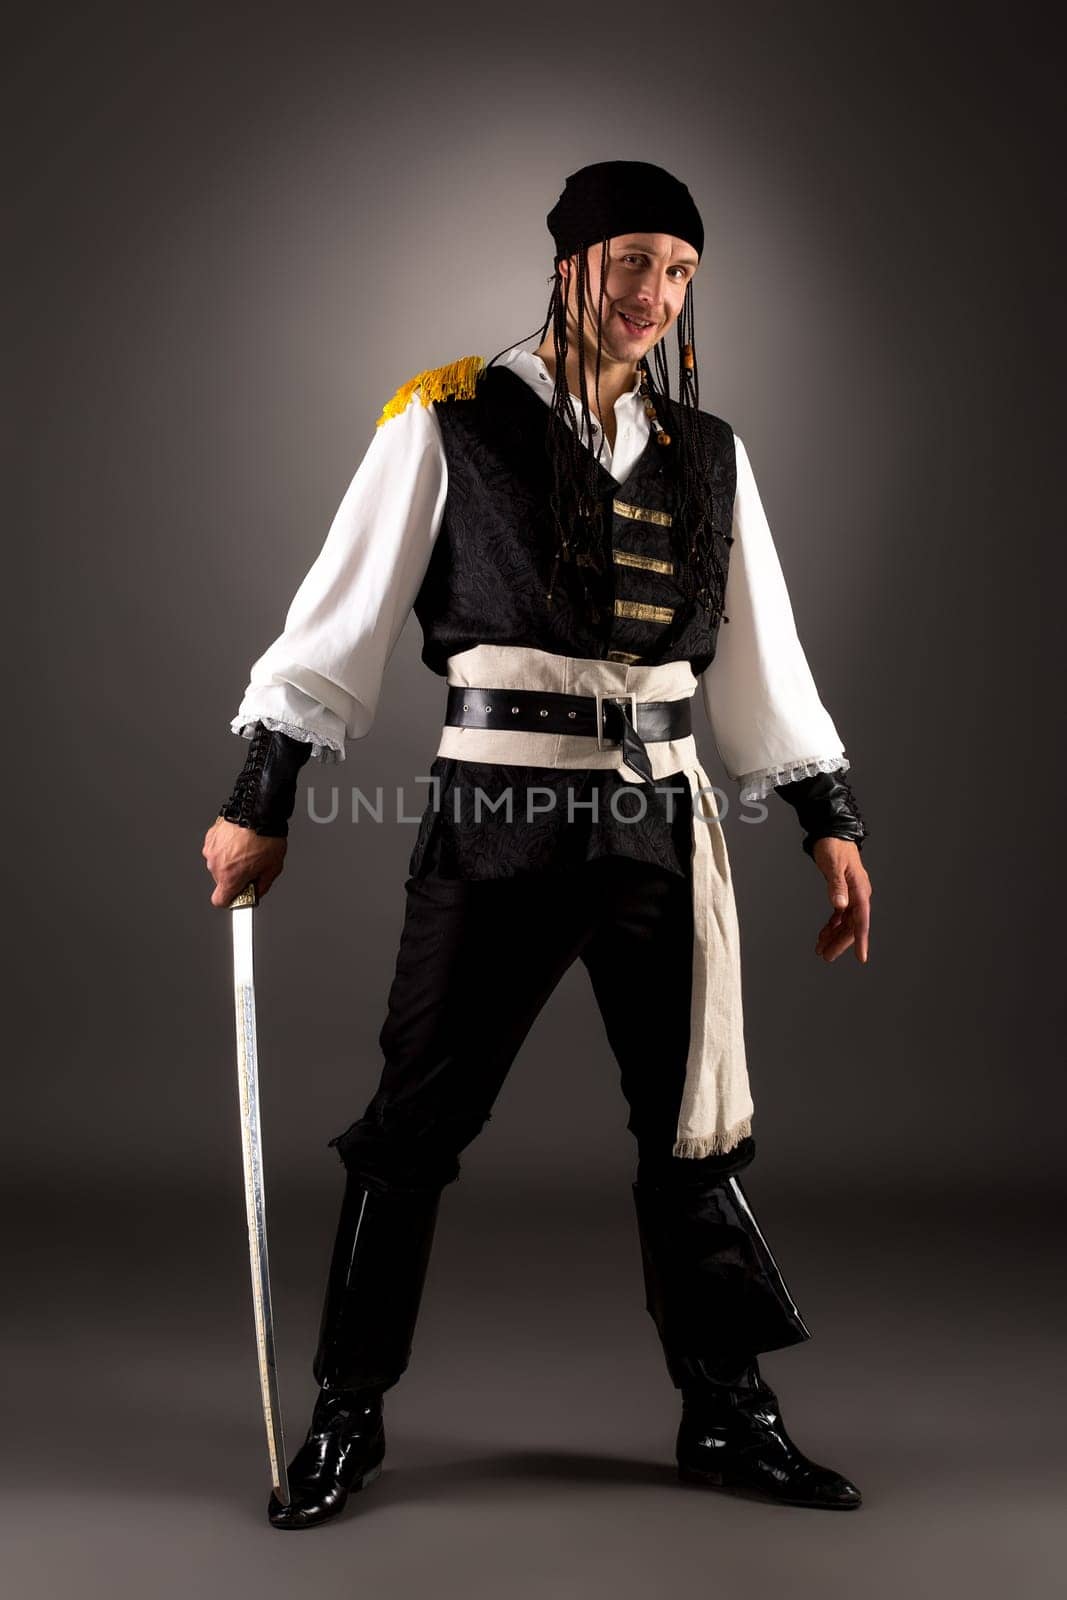 Smiling man posing as pirate at camera. Studio photo